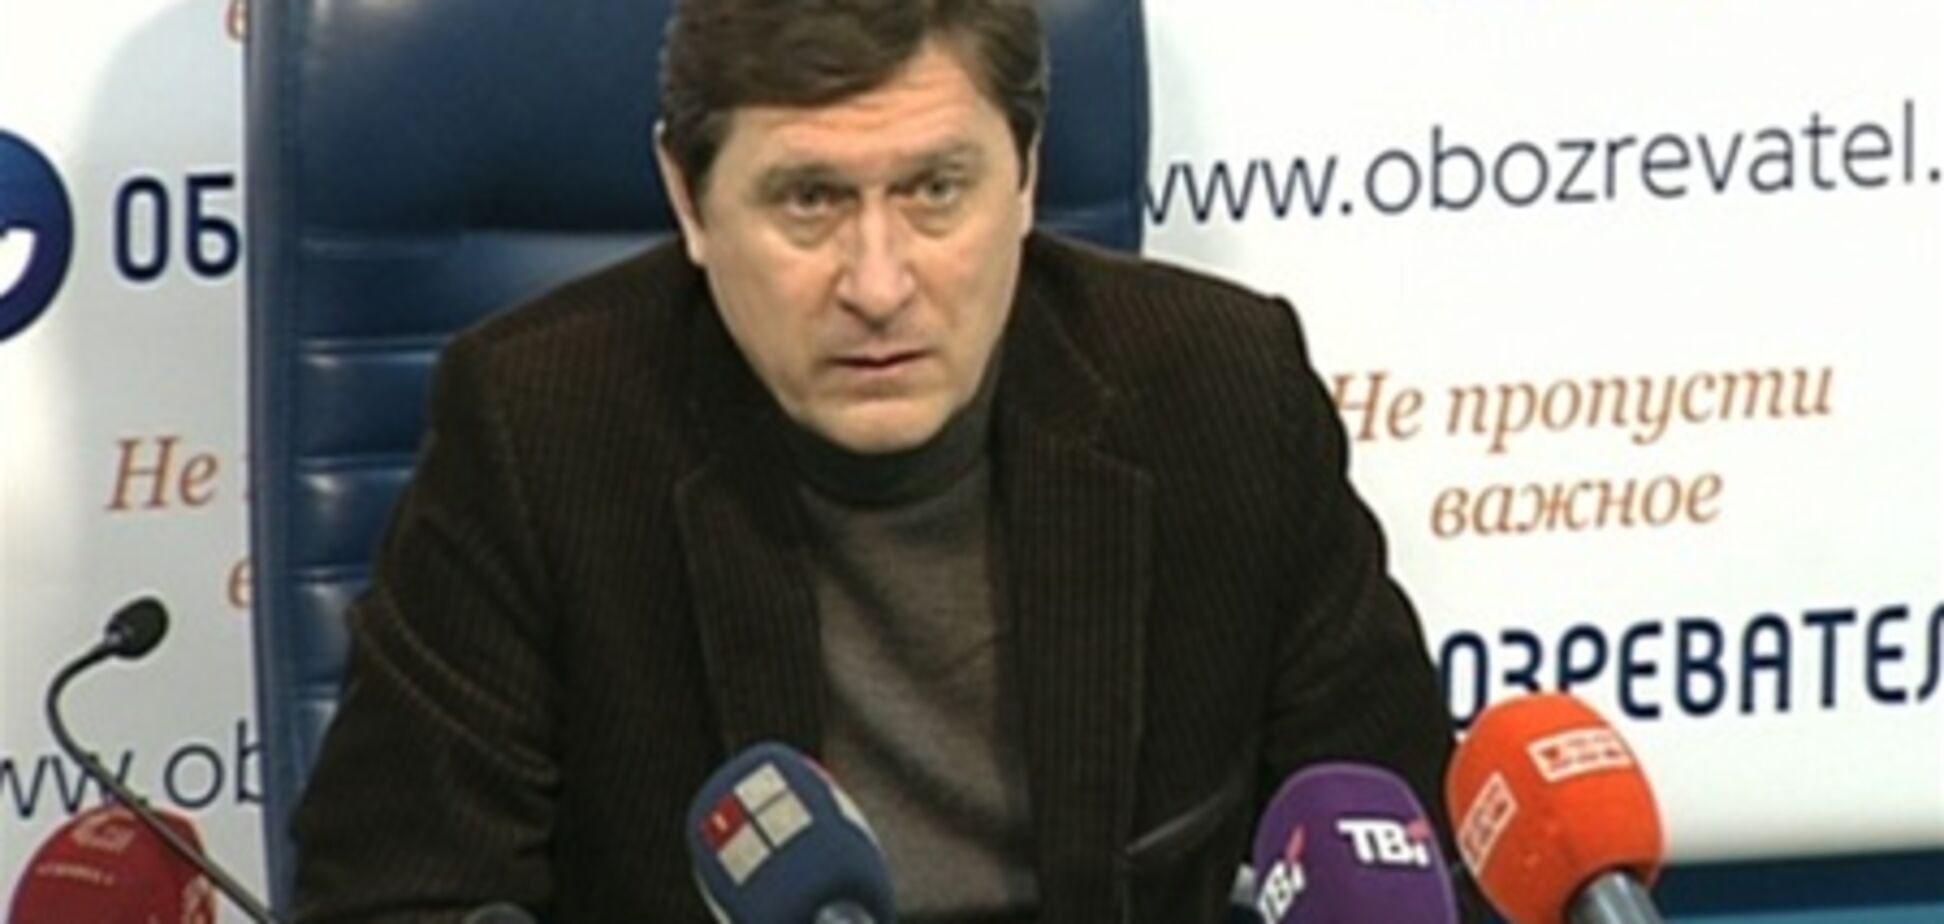 Отставка Злочевского возможно связана с бизнес-конфликтами?